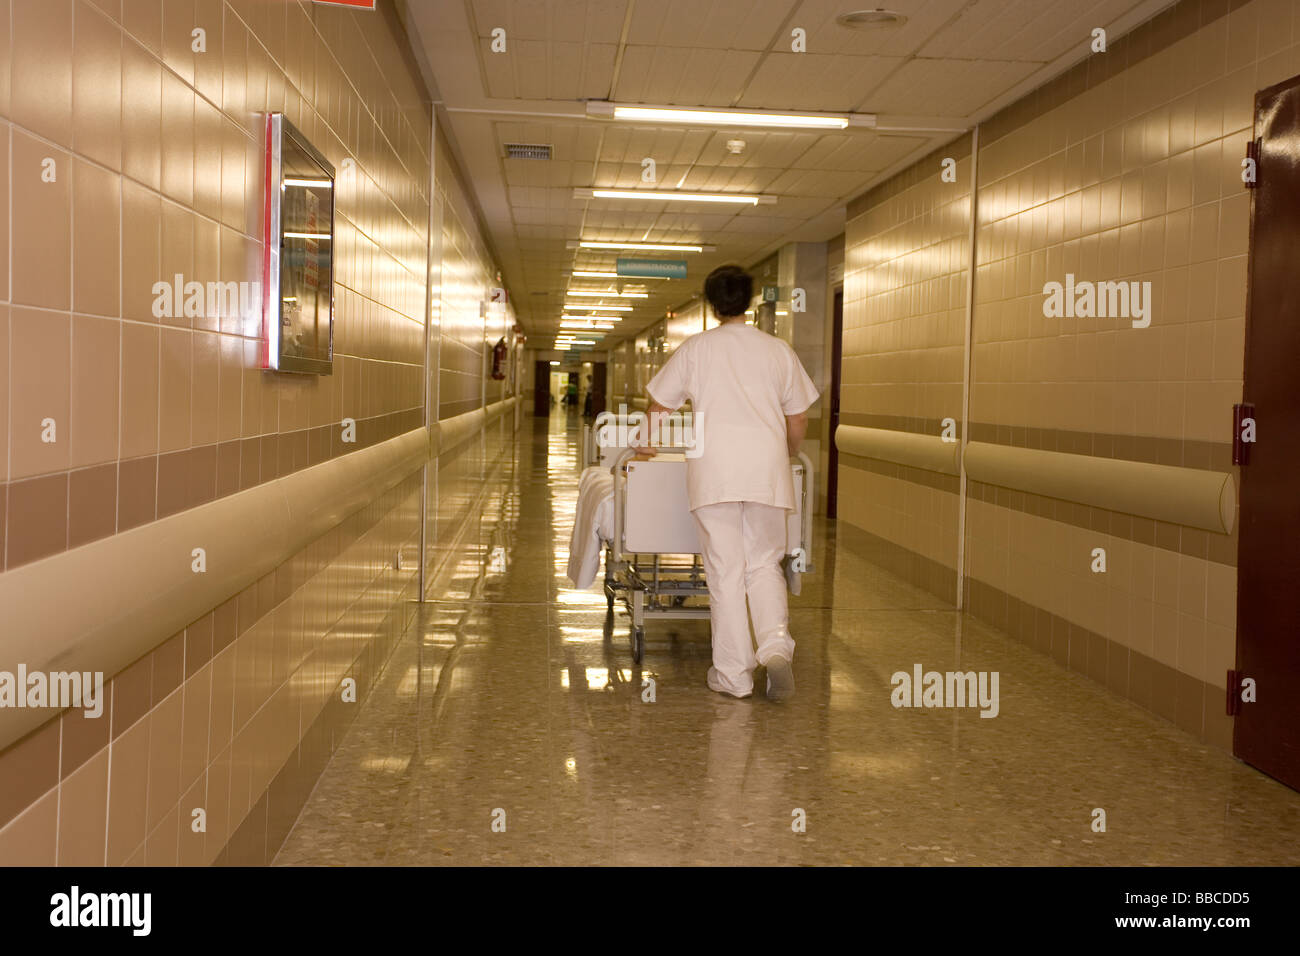 Hospital Hallway, Pasillo de Hospital Stock Photo